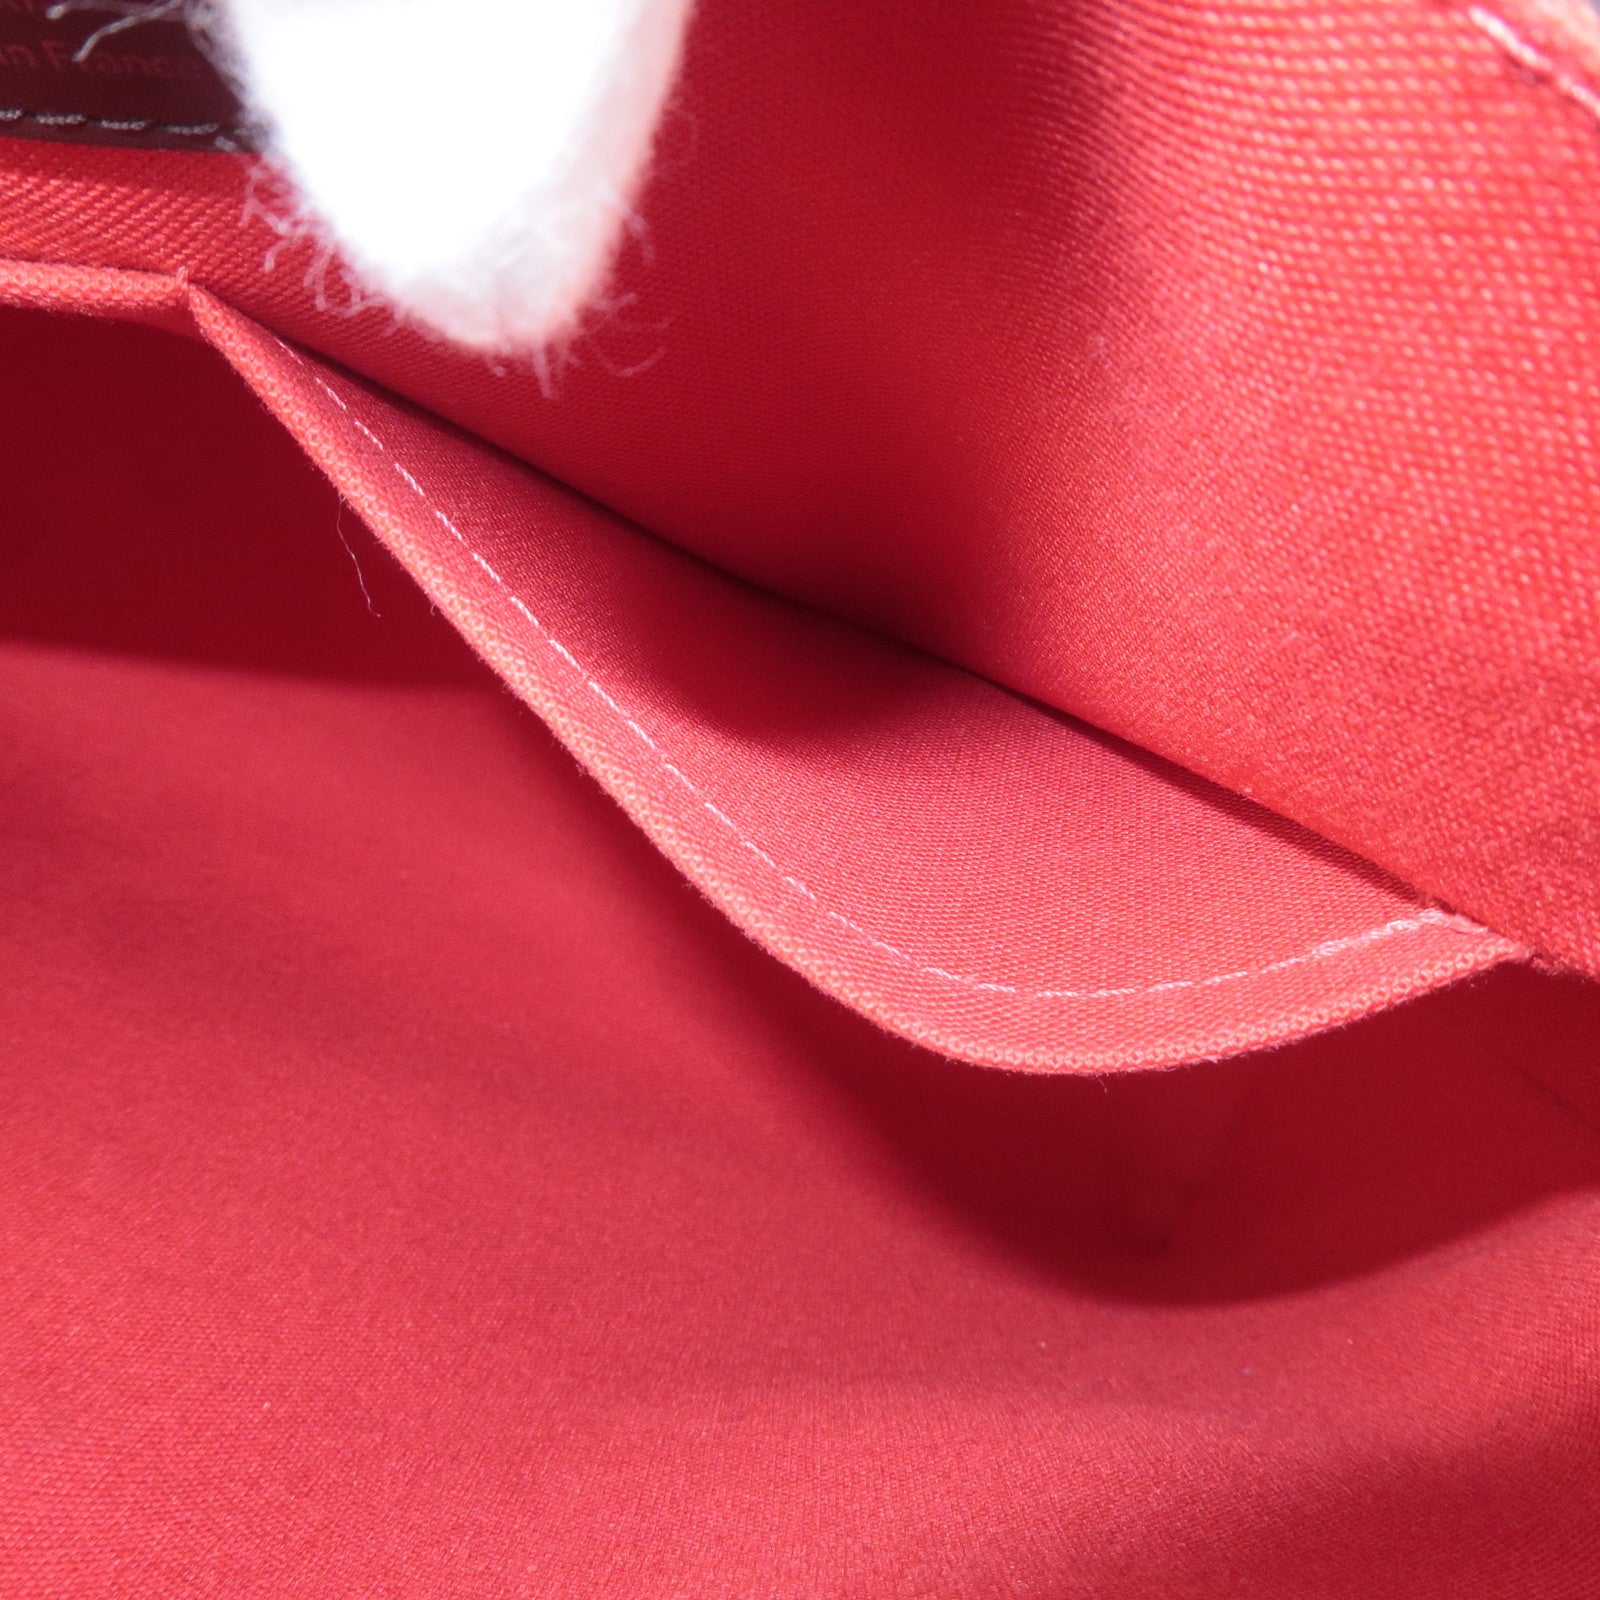 Replica Louis Vuitton N41178 Besace Rosebery Shoulder Bag Damier